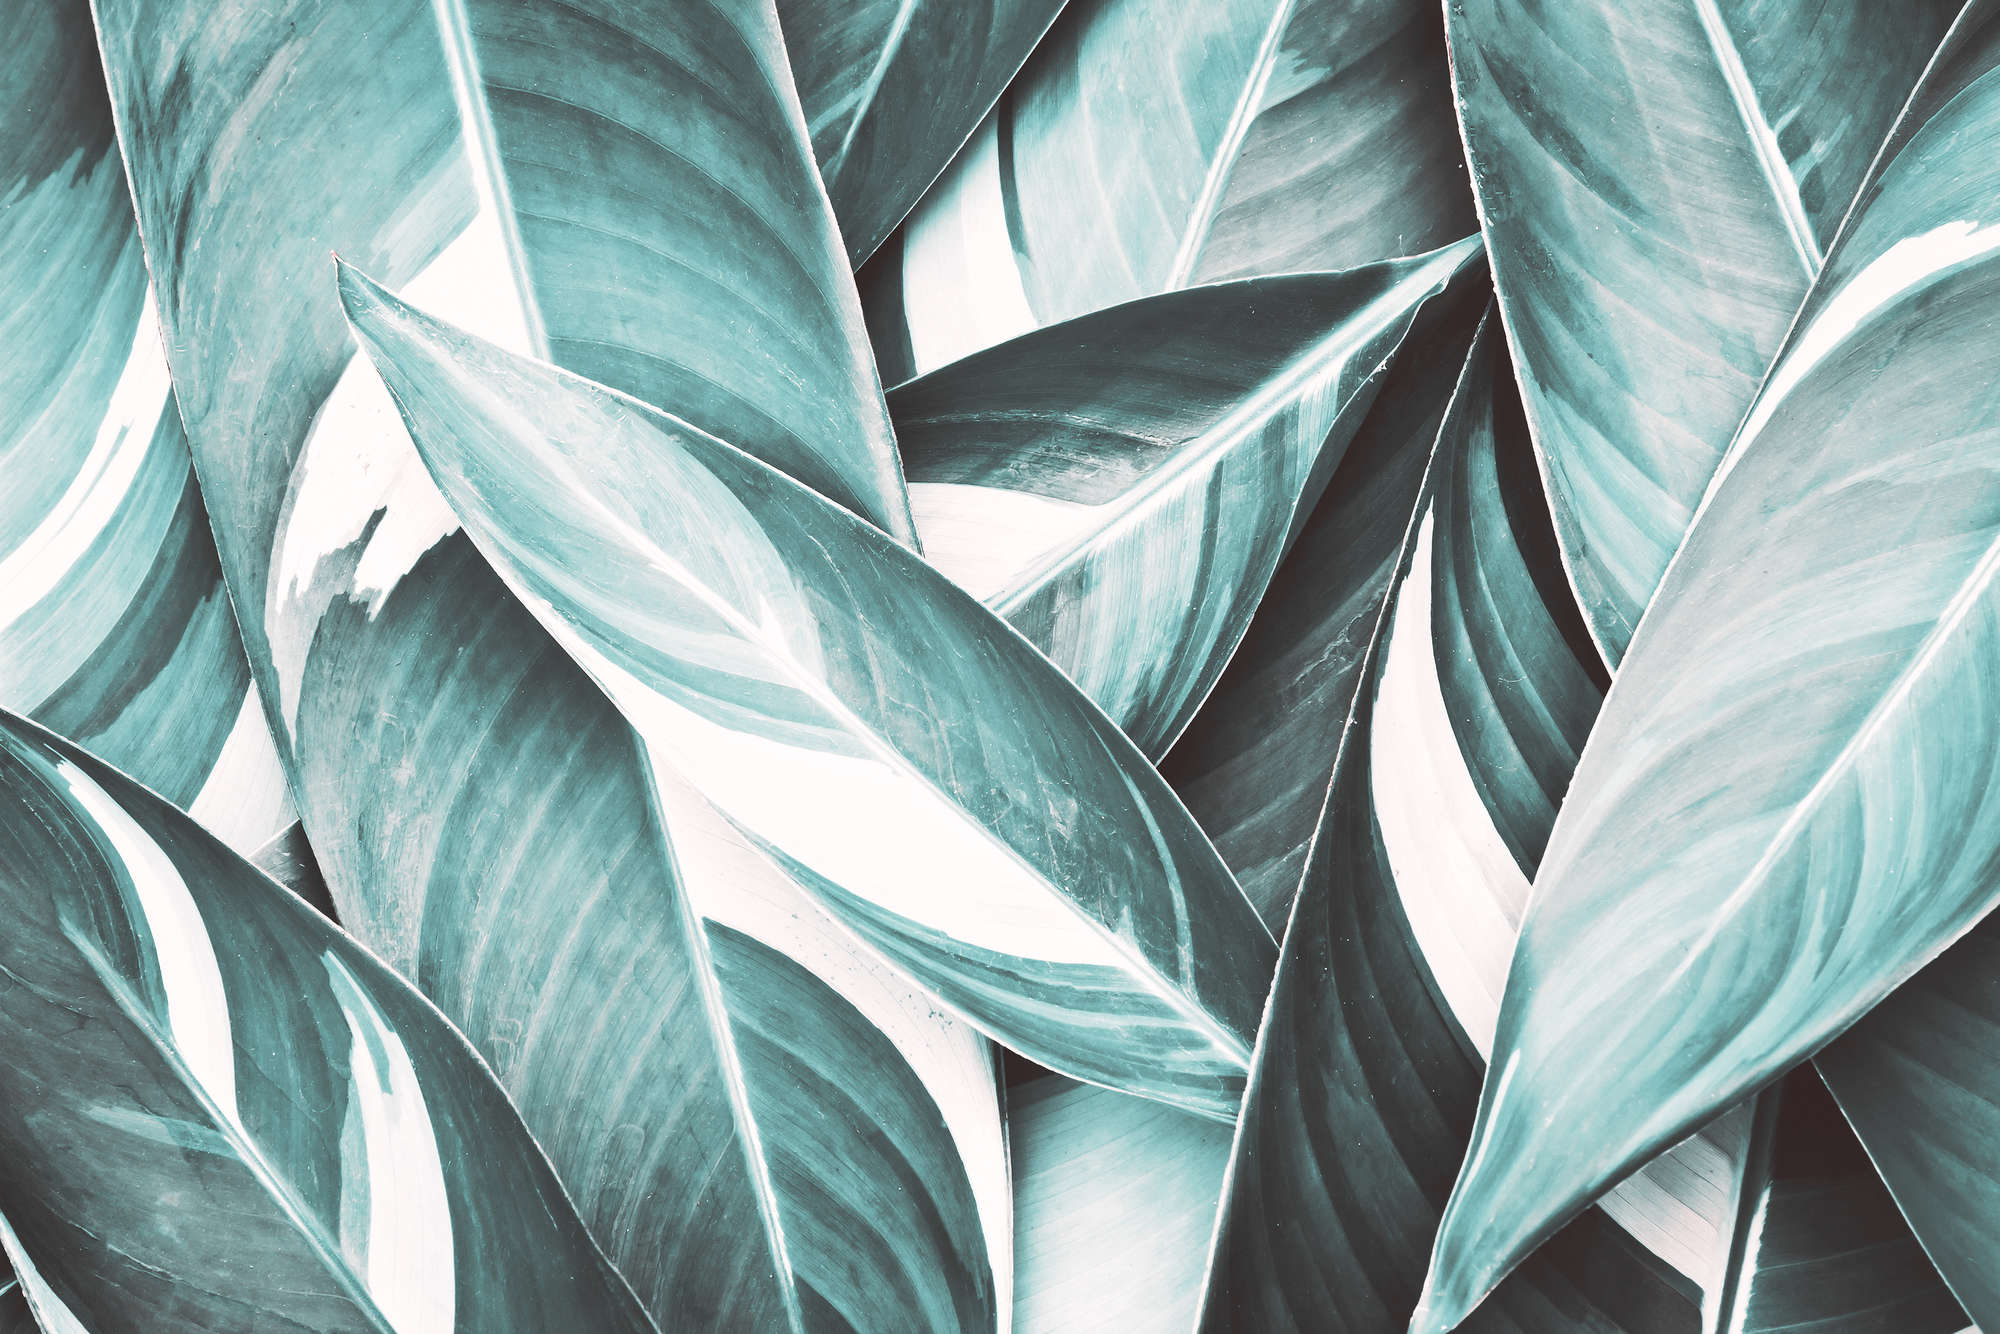             Nature Papier peint motif feuilles de palmier gris sur intissé nacré lisse
        